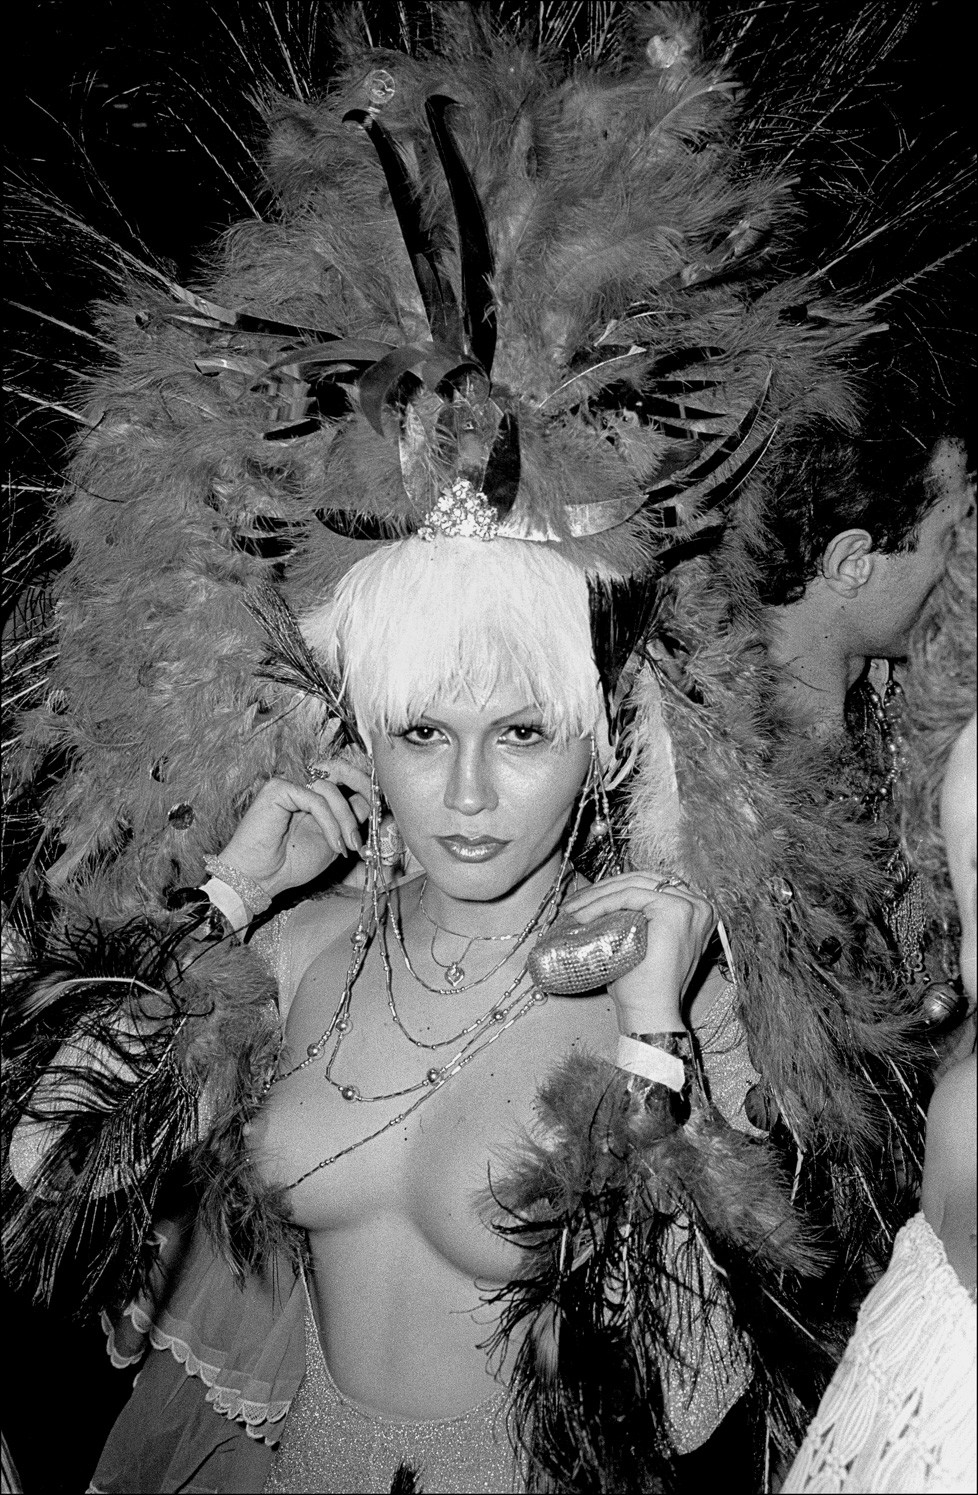 Девушка в головном уборе из павлиньих перьев танцует на вечеринке Студия 54 в честь Хэллоуина. Фотограф Аллан Танненбаум